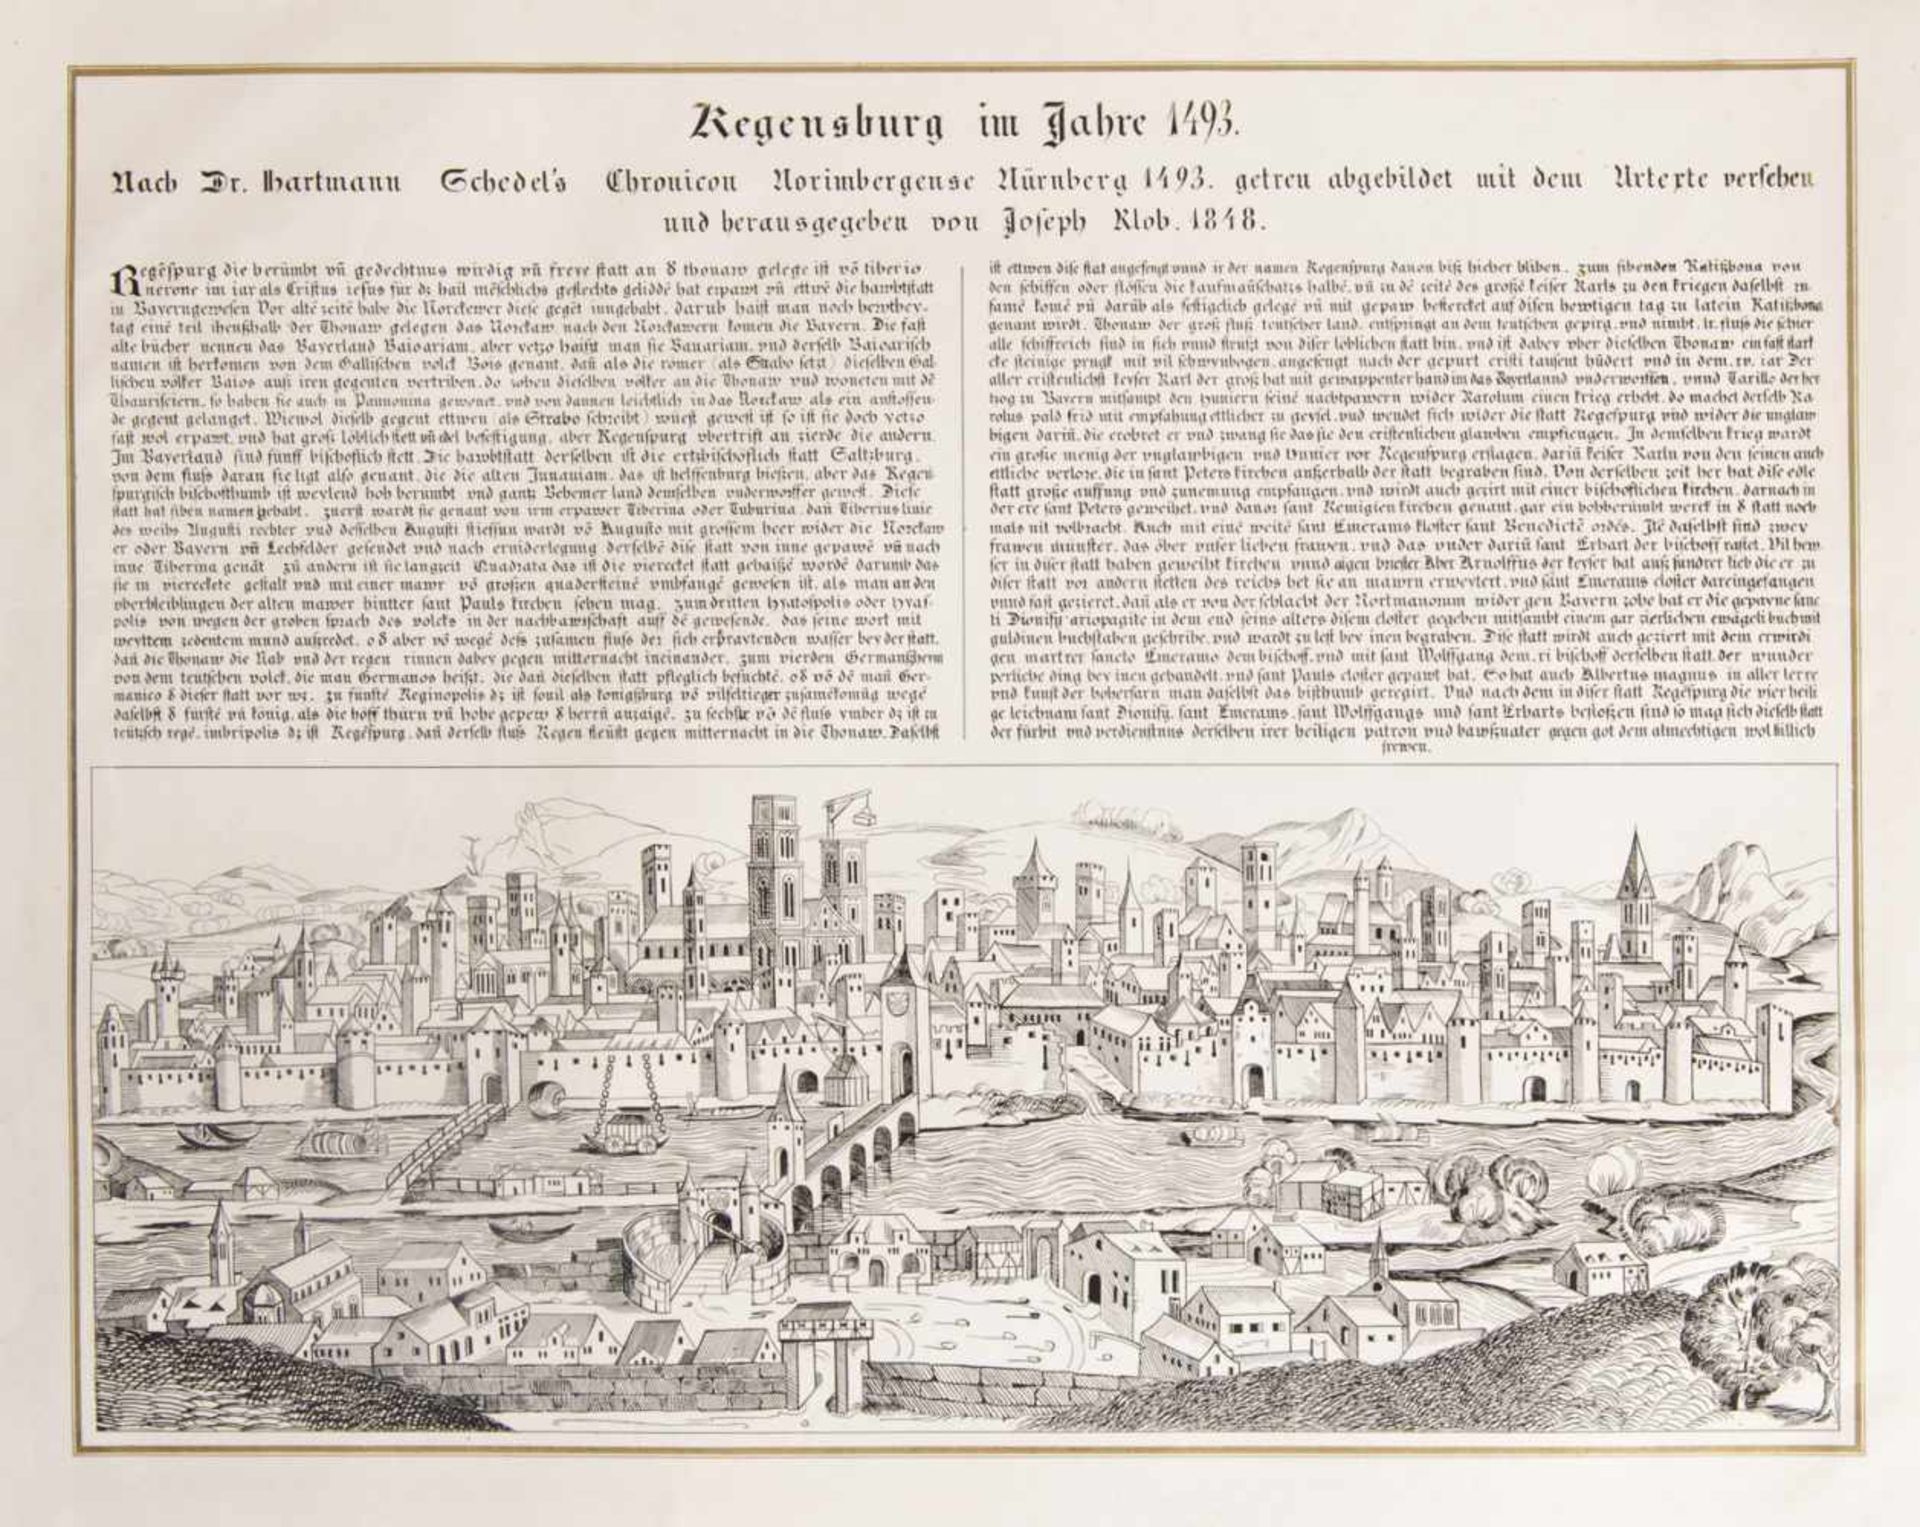 Regensburg -"Regensburg im Jahre 1493. Nach Dr. Hartmann Schedel's Chronicon Norimbergense